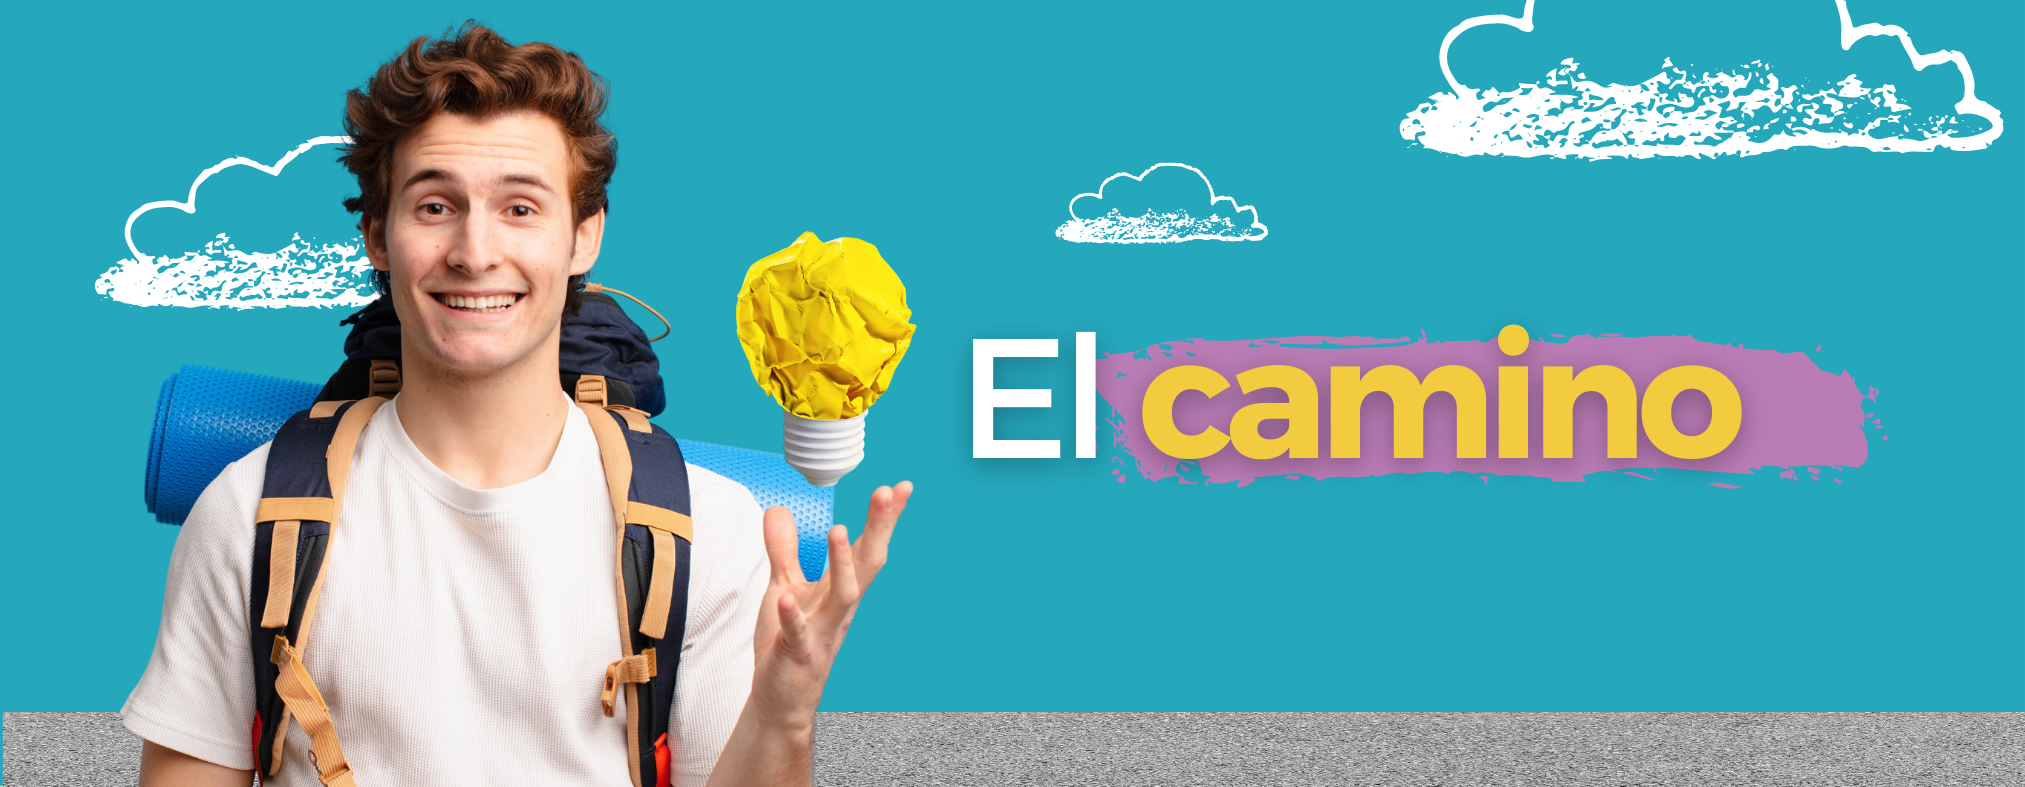 Imagen de portada de Sección "El Camino" - Se visualiza un Chico con una mochila colgando, teniendo una idea brillante